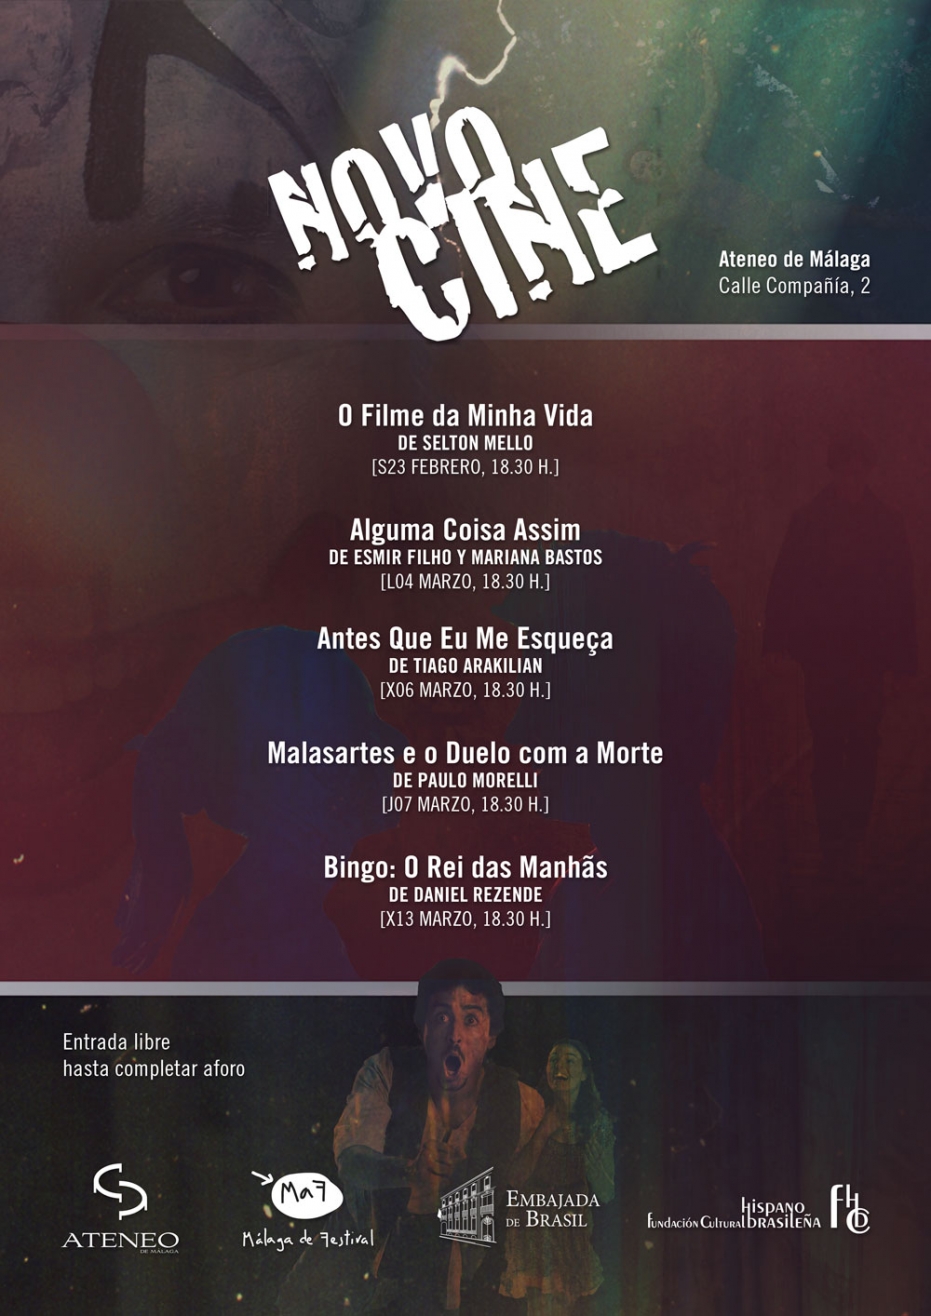 II Ciclo de Cine Novocine: proyección de 'Bingo: O Rei das Manhas', de Daniel Rezende. En colaboración con la Embajada de Brasil y la Fundación Cultural Hispano Brasileña